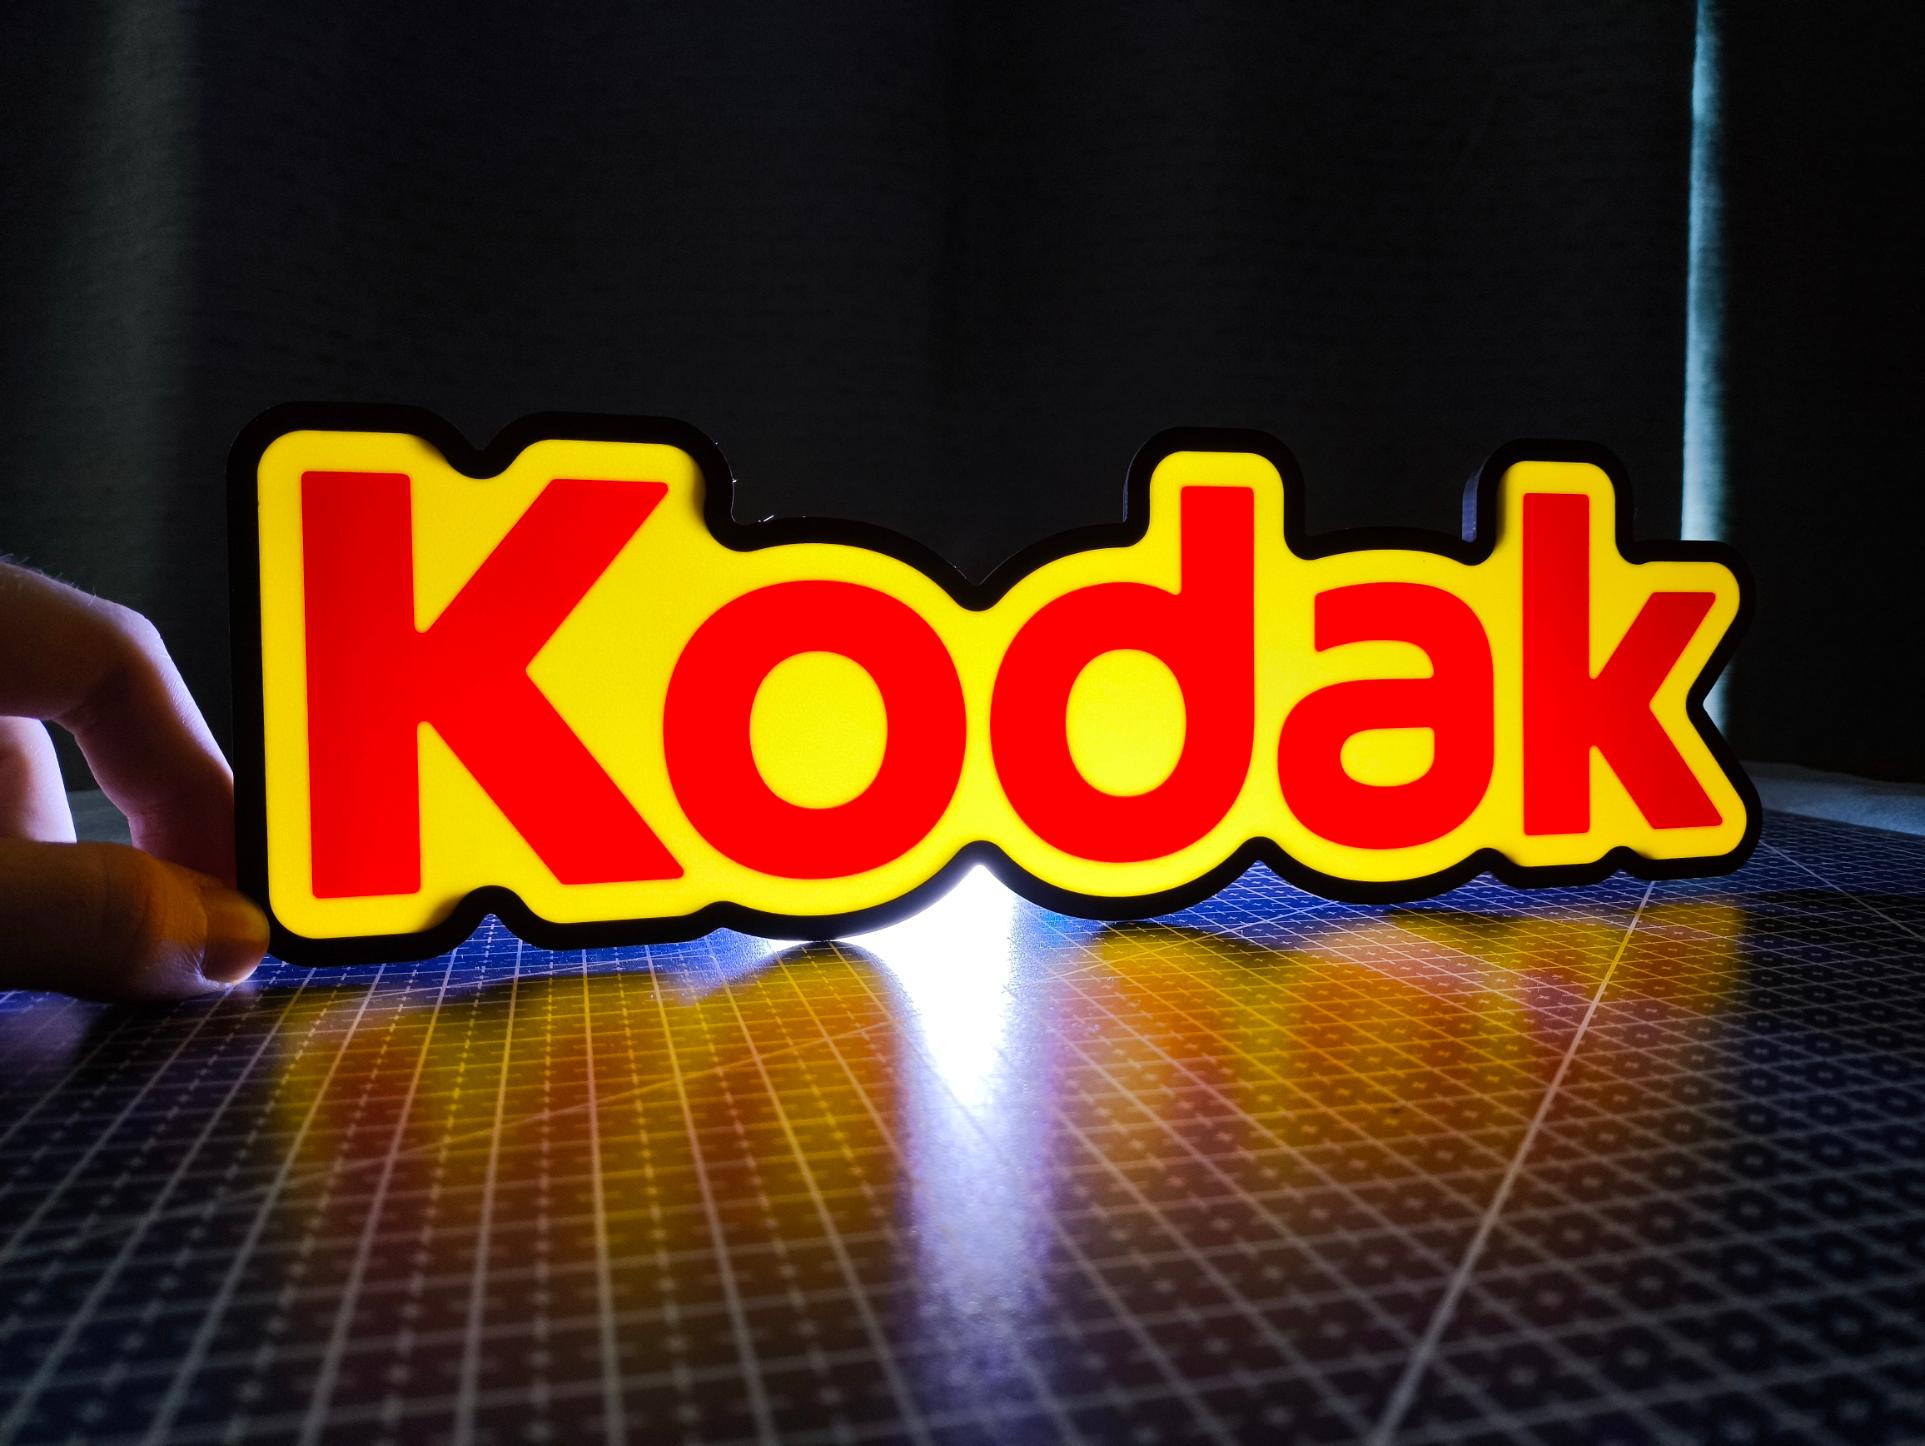 Kodak Lightbox LED Lamp 3d model